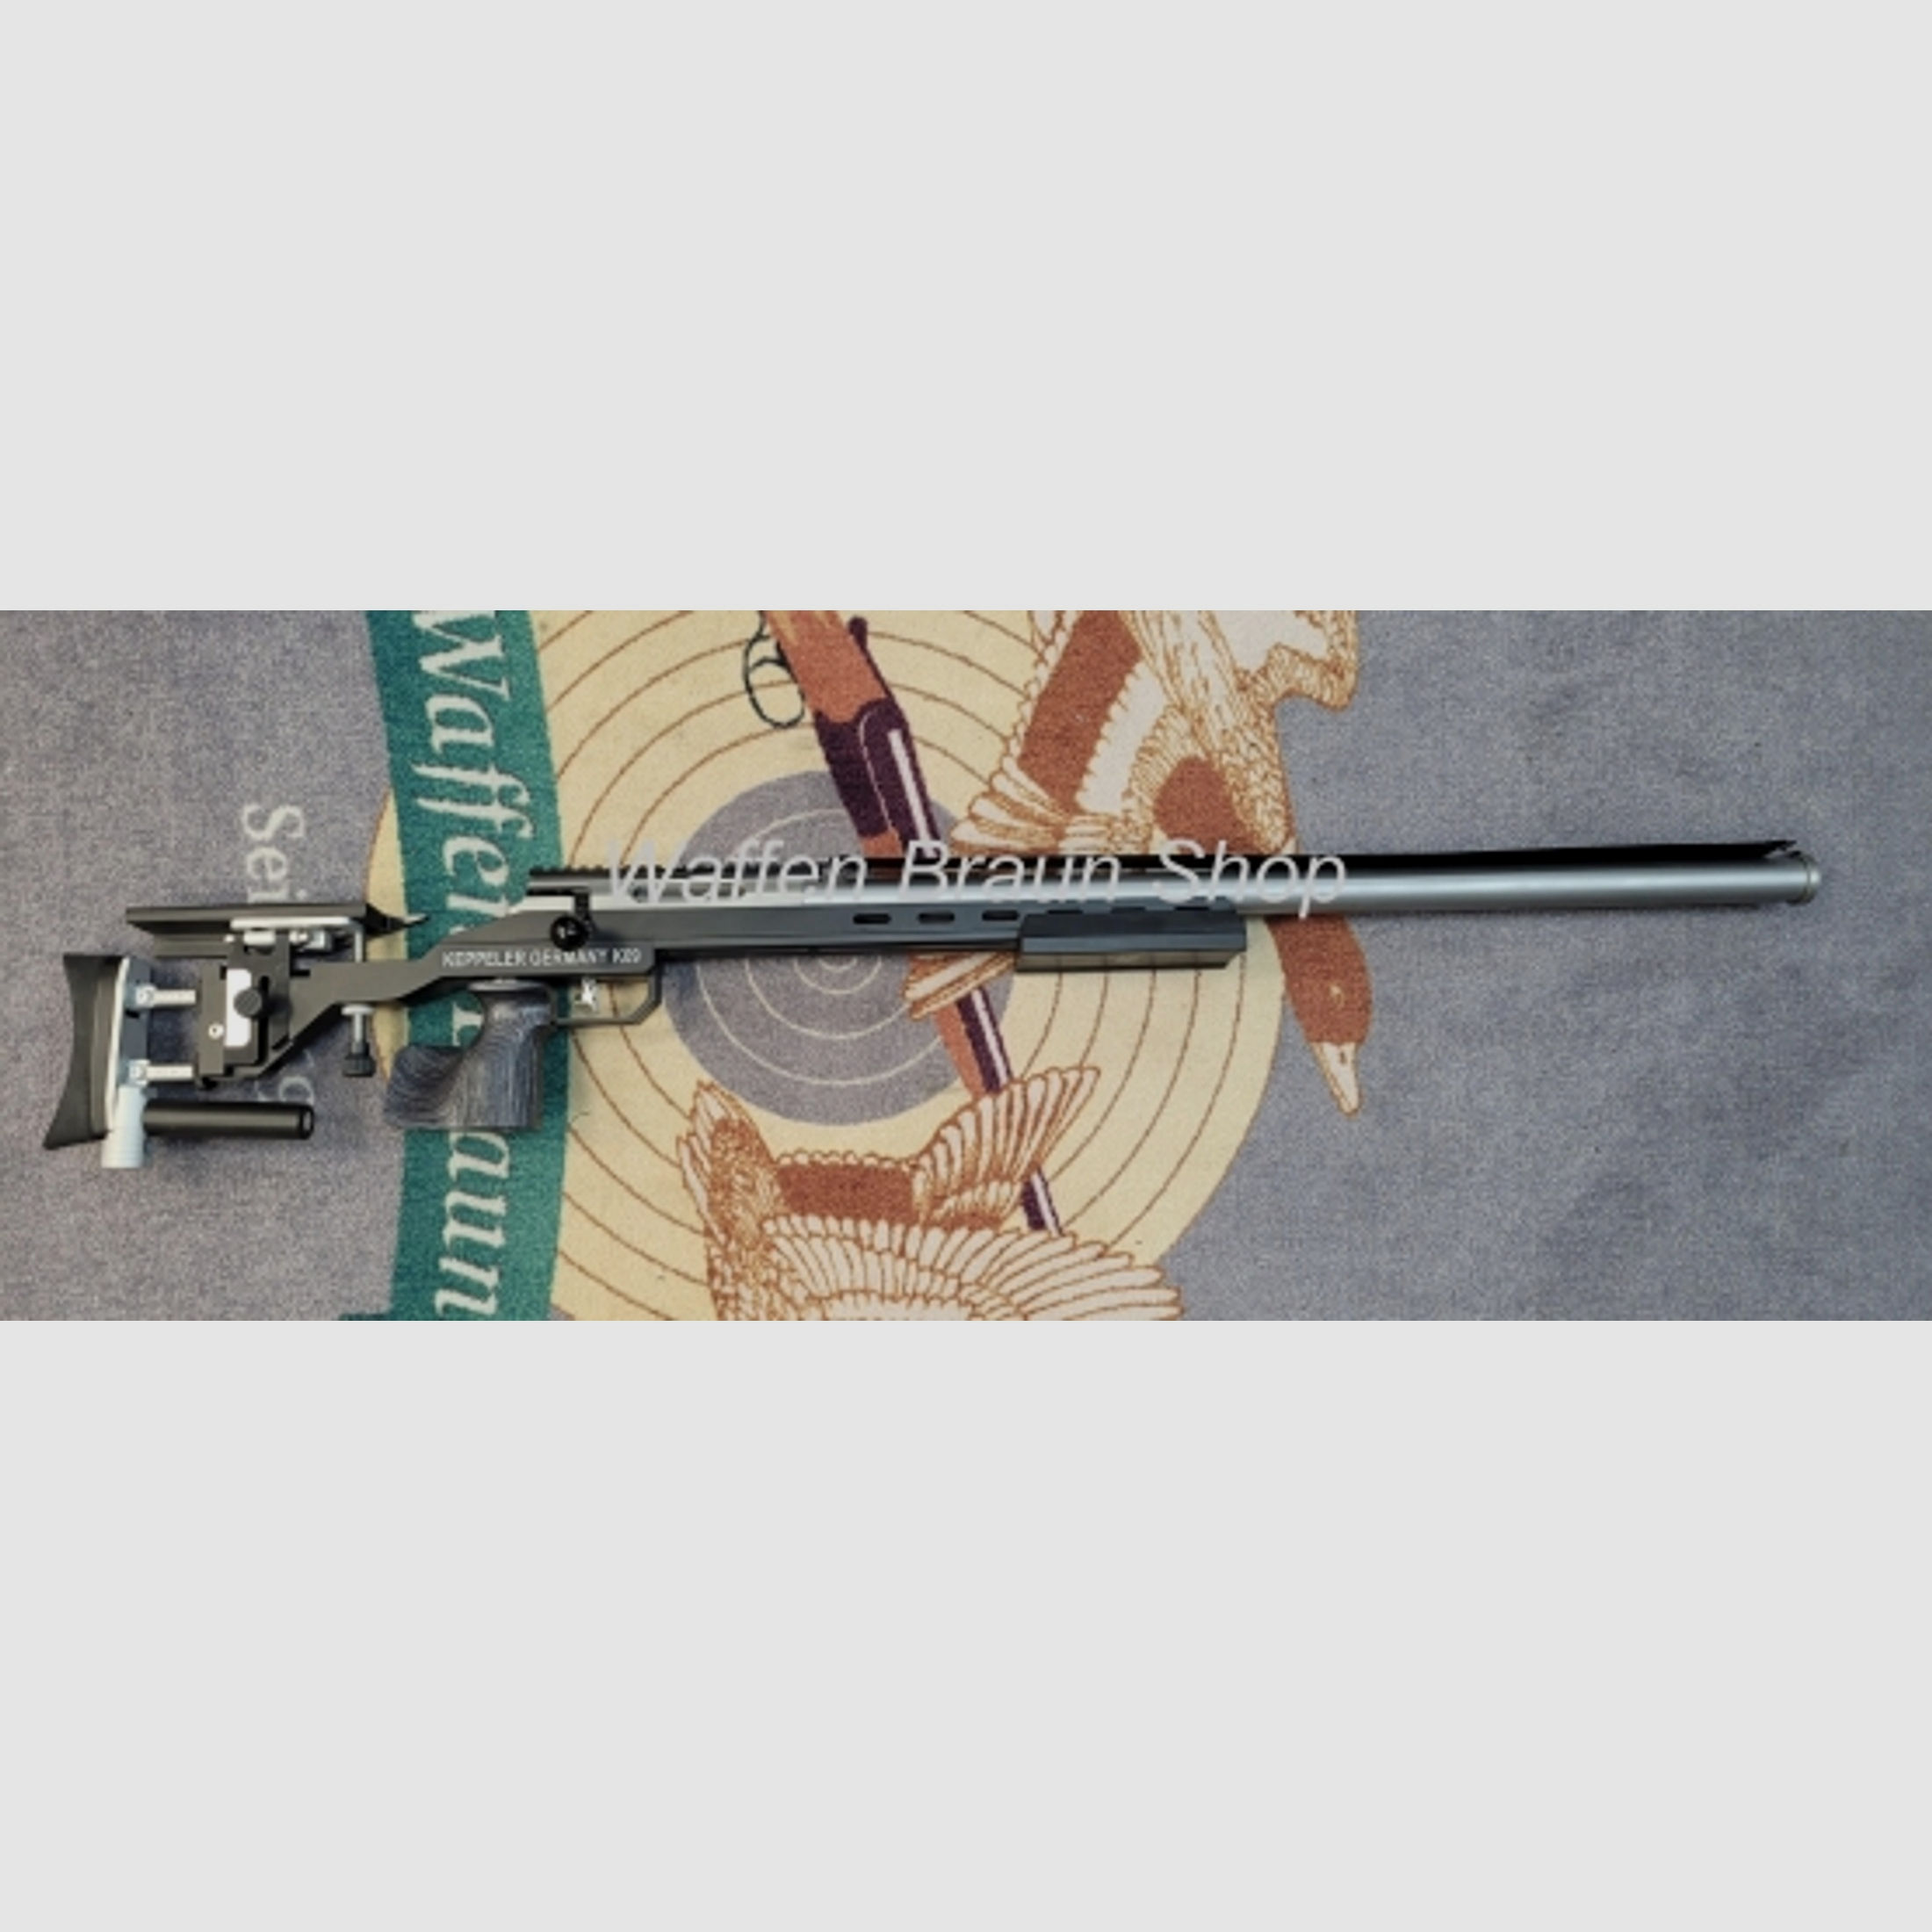 Keppeler Benchrestgewehr K09-B 6,5 Creedmoor